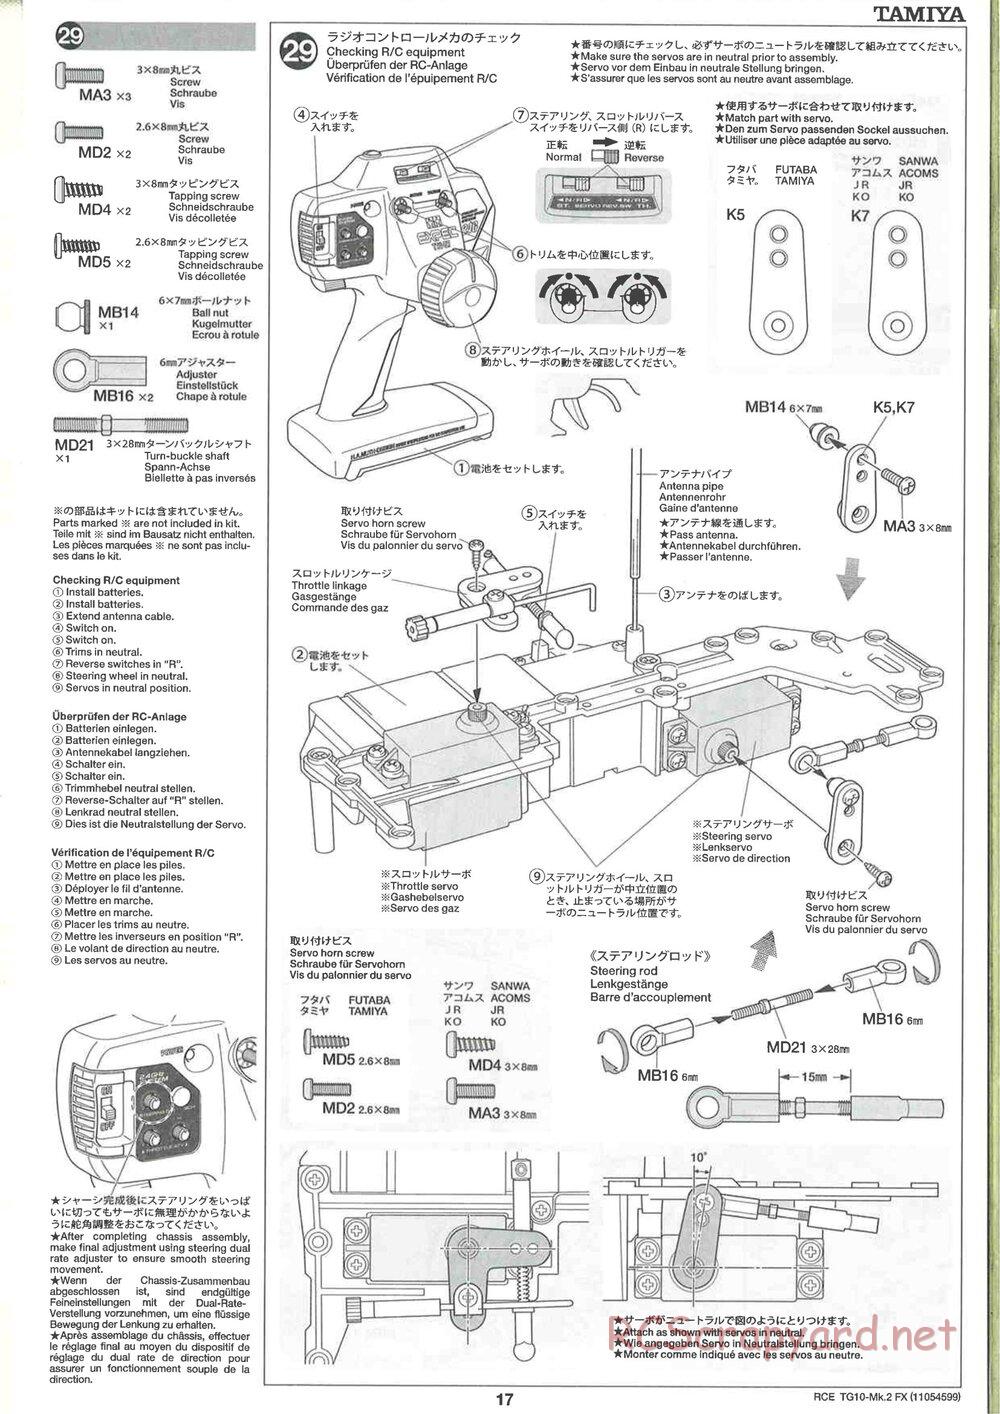 Tamiya - TG10 Mk.2 FX Chassis - Manual - Page 17